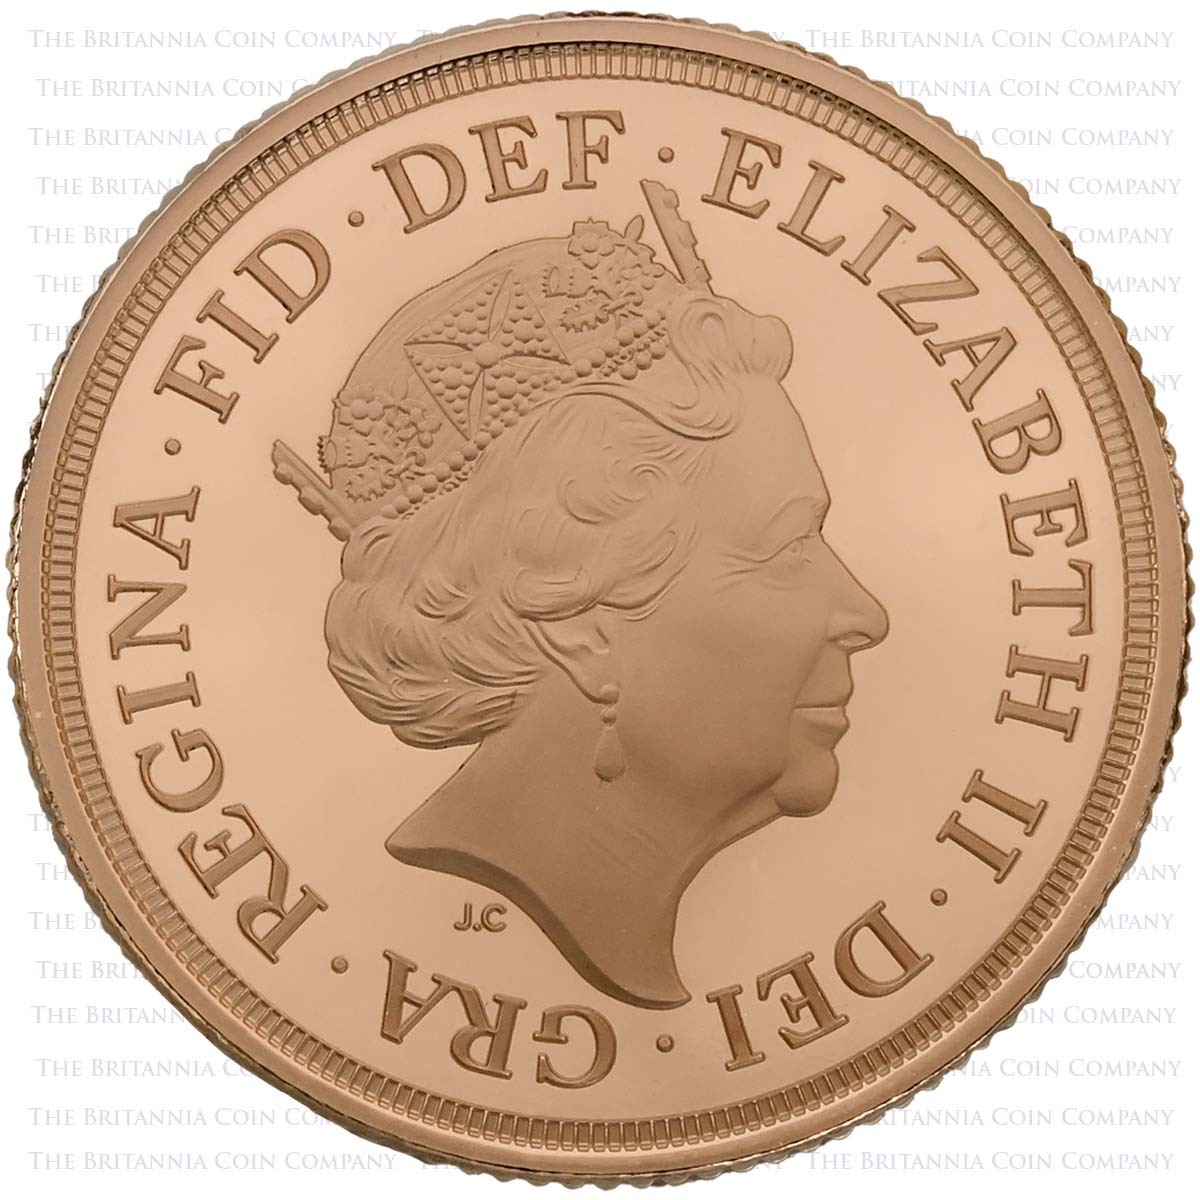 SV3220MM 2020 Elizabeth II 3 Coin Gold Proof Sovereign Set Royal Cypher Obverse